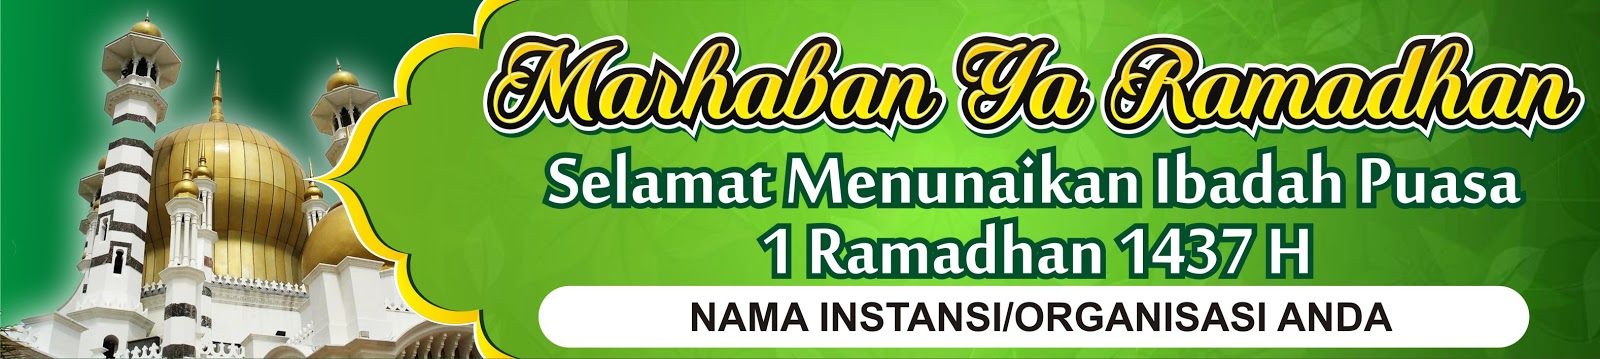 Spanduk Ucapan Bulan Ramadhan